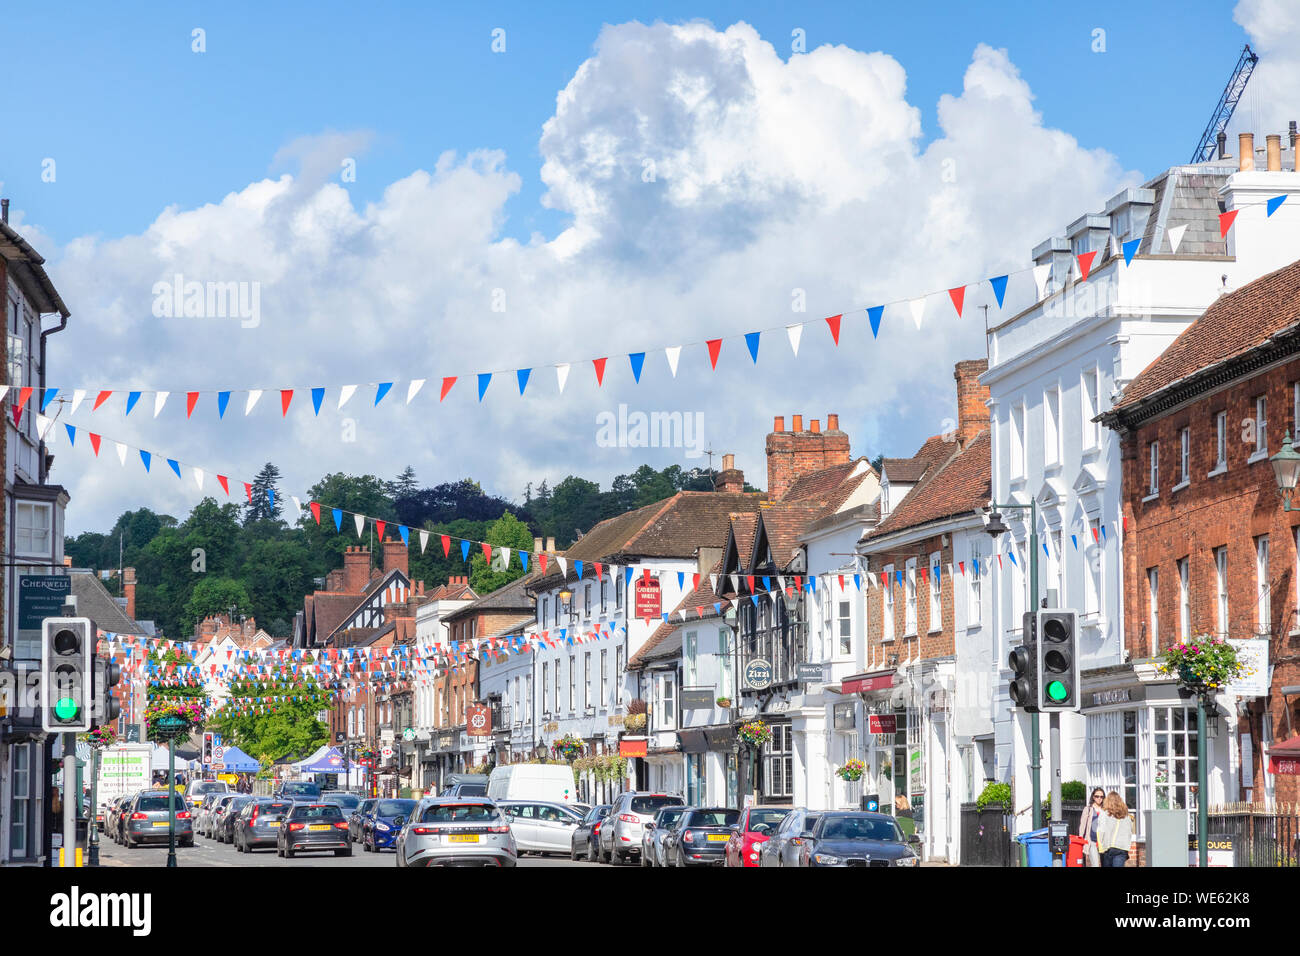 6 Giugno 2019: Henley on Thames,Oxfordshire - Hart Street, una delle principali strade dello shopping di Henley, con riempimento di traffico della strada. Foto Stock